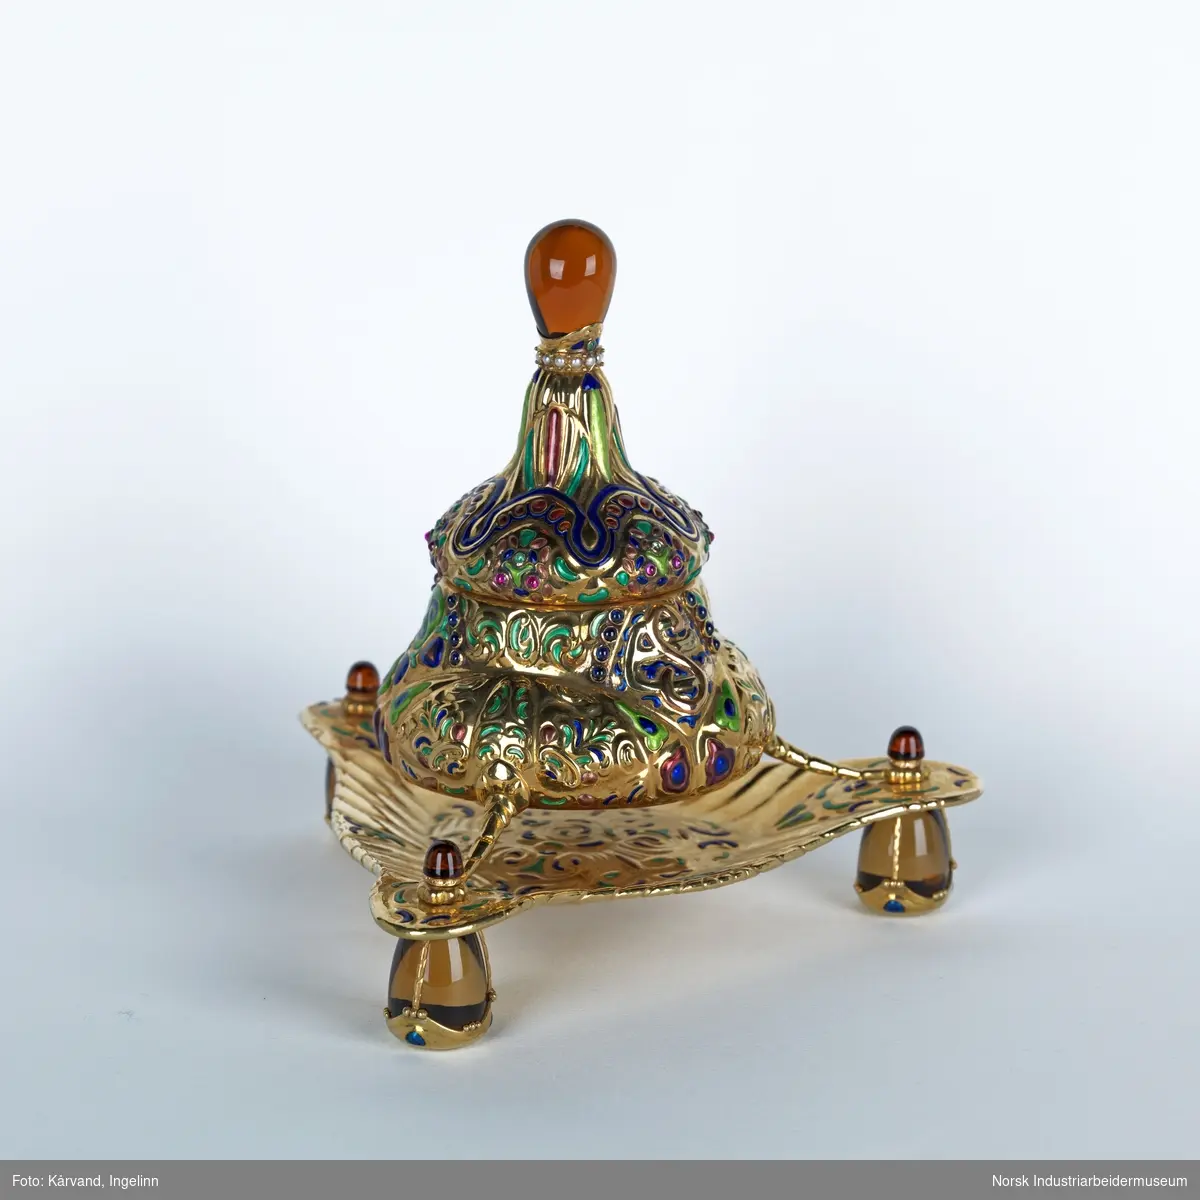 Blekkhus i gull - 750 (18 karat) - med rike former og sisselert. Står på tre ben og er dekorert med ulike stener som muligens er safirer, rubiner, smaragder, perler, citriner og sølv.

Dimensjon: 17 x  17 cm